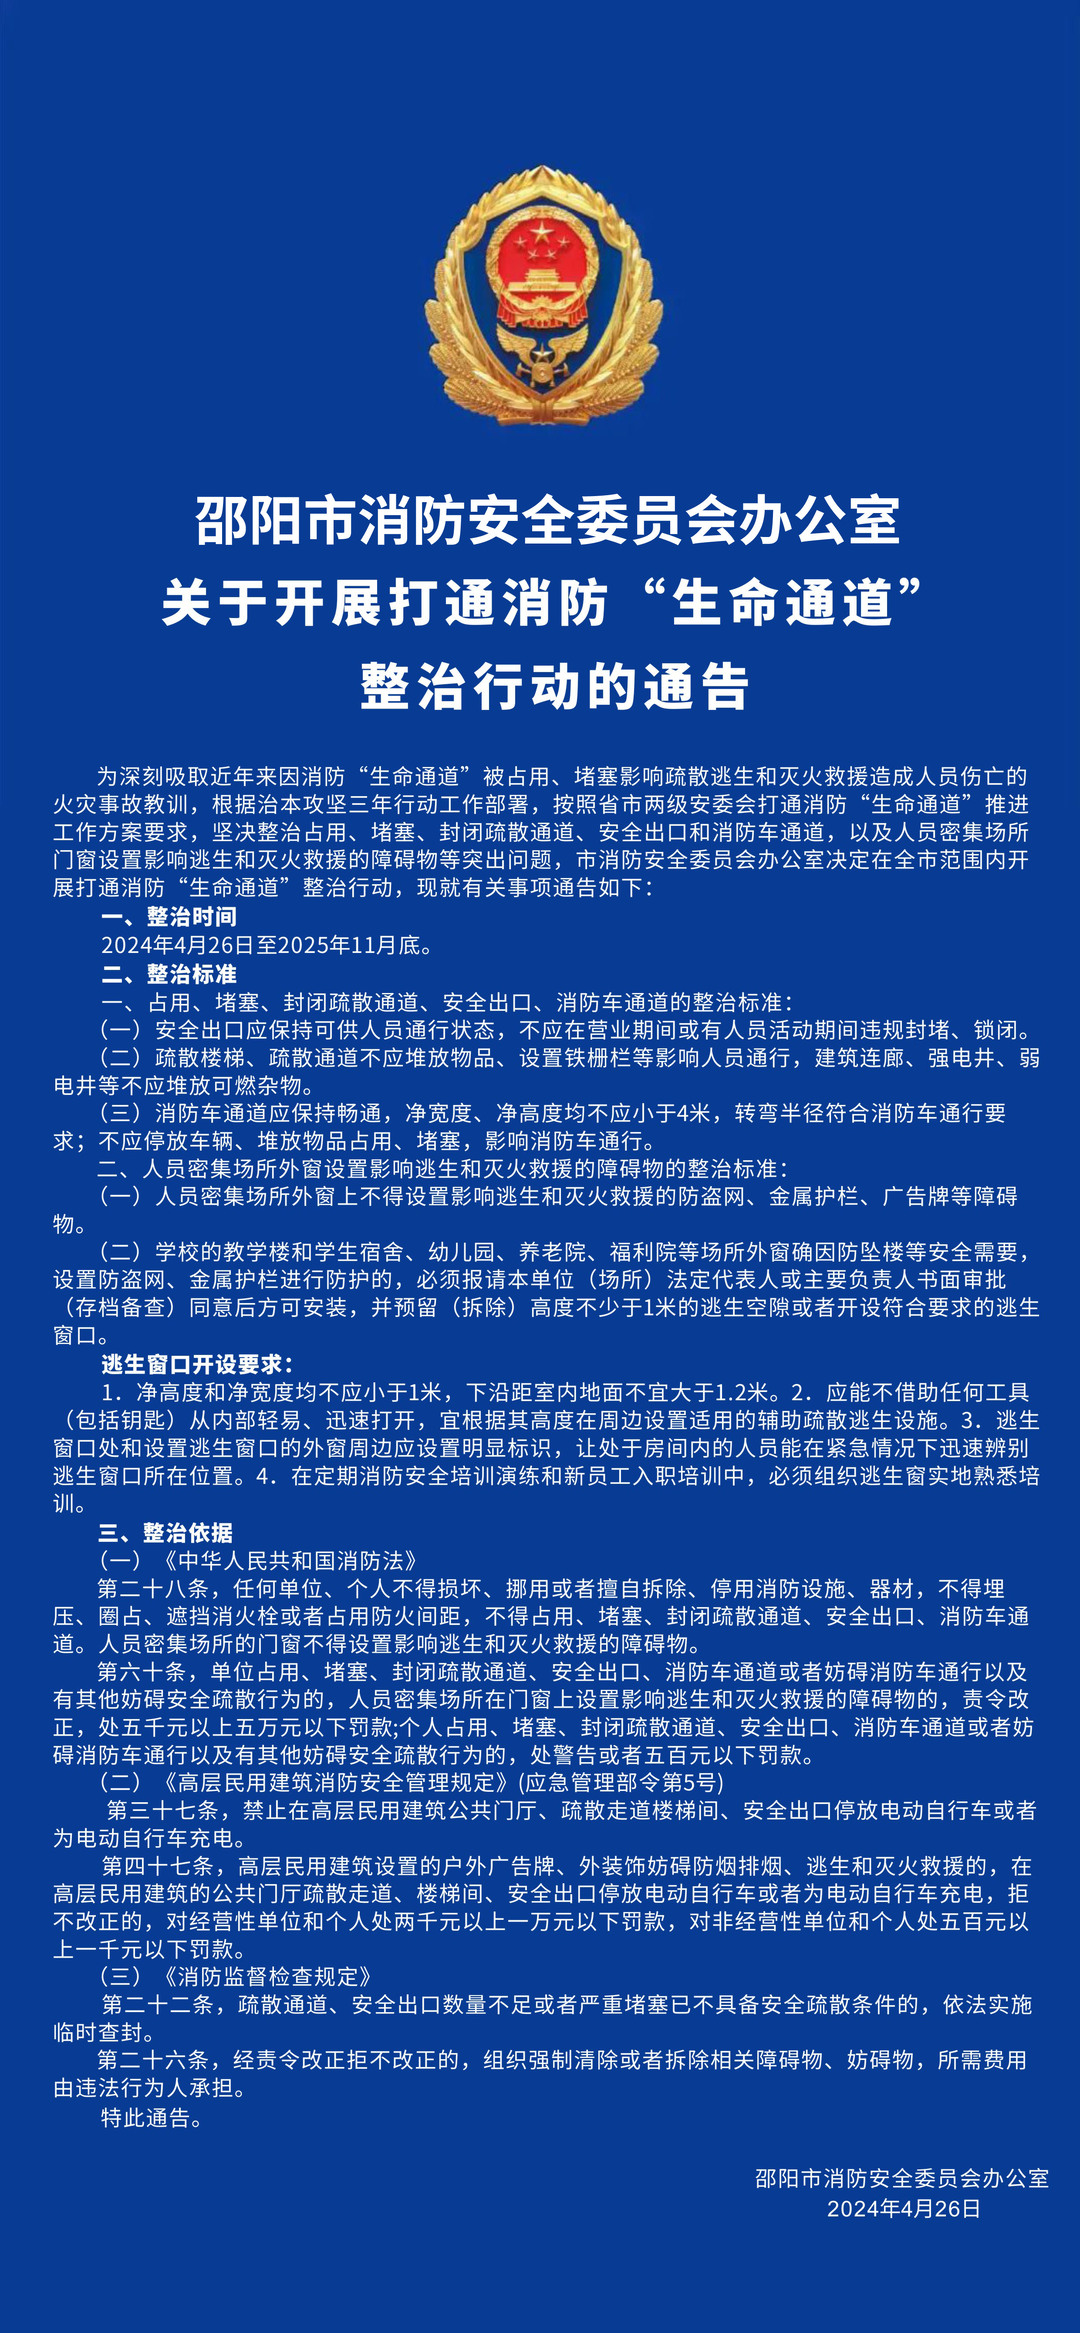 邵阳市消防安全委员办公室关于开展打通消防“生命通道整治行动的通告